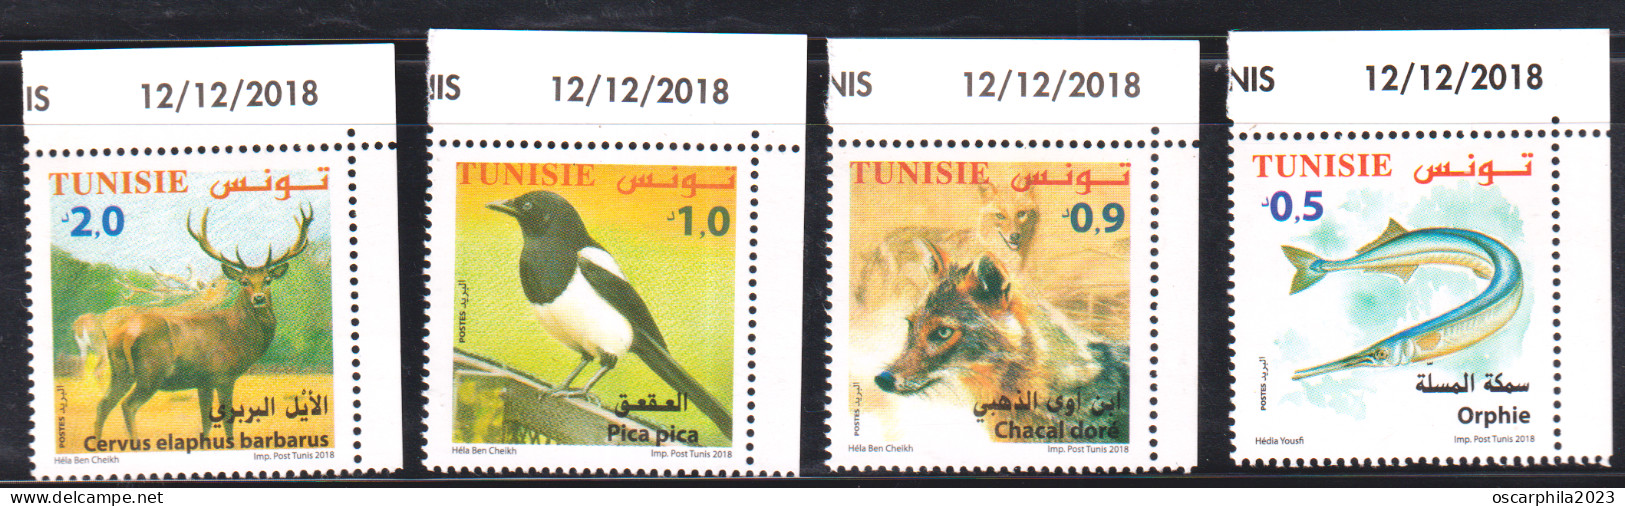 2018-Tunisie- Faune Terrestre, Maritime-Orphie, Chacal Doré, Pica Pica, Cervus Elaphus -4V S.C Coin Daté -MNH***** - Pics & Grimpeurs